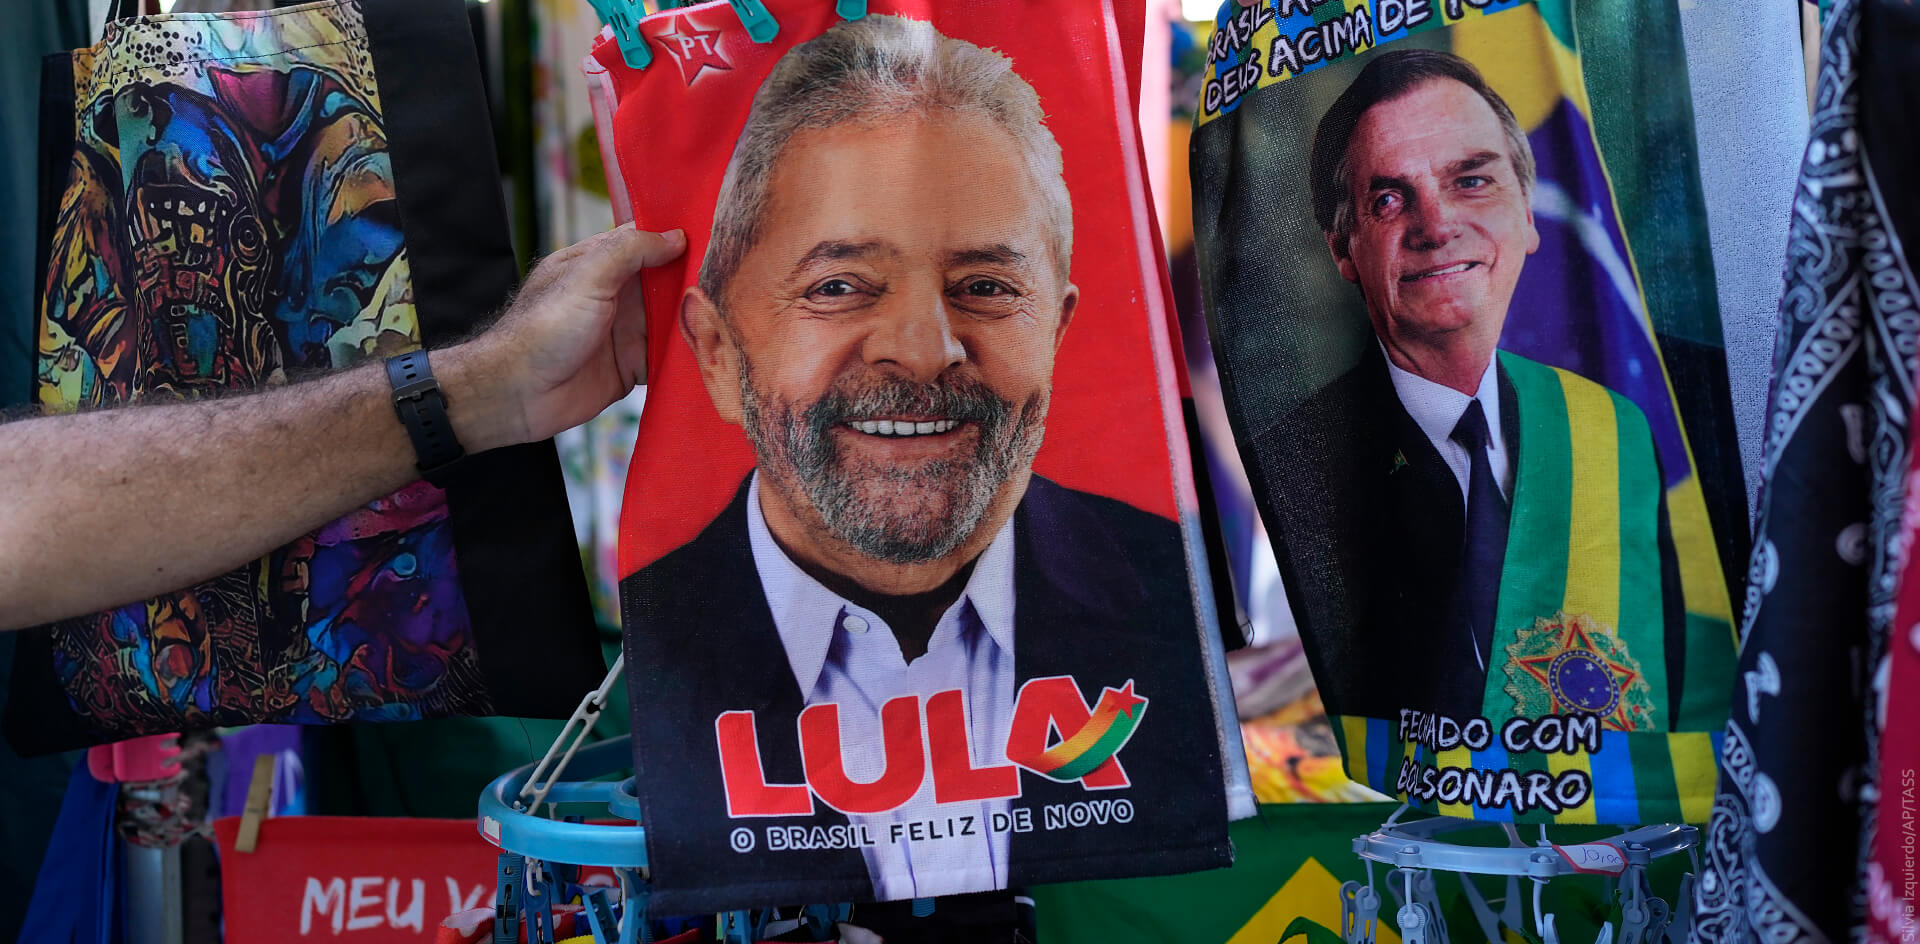 Антироссийская медиакампания в Бразилии провалилась